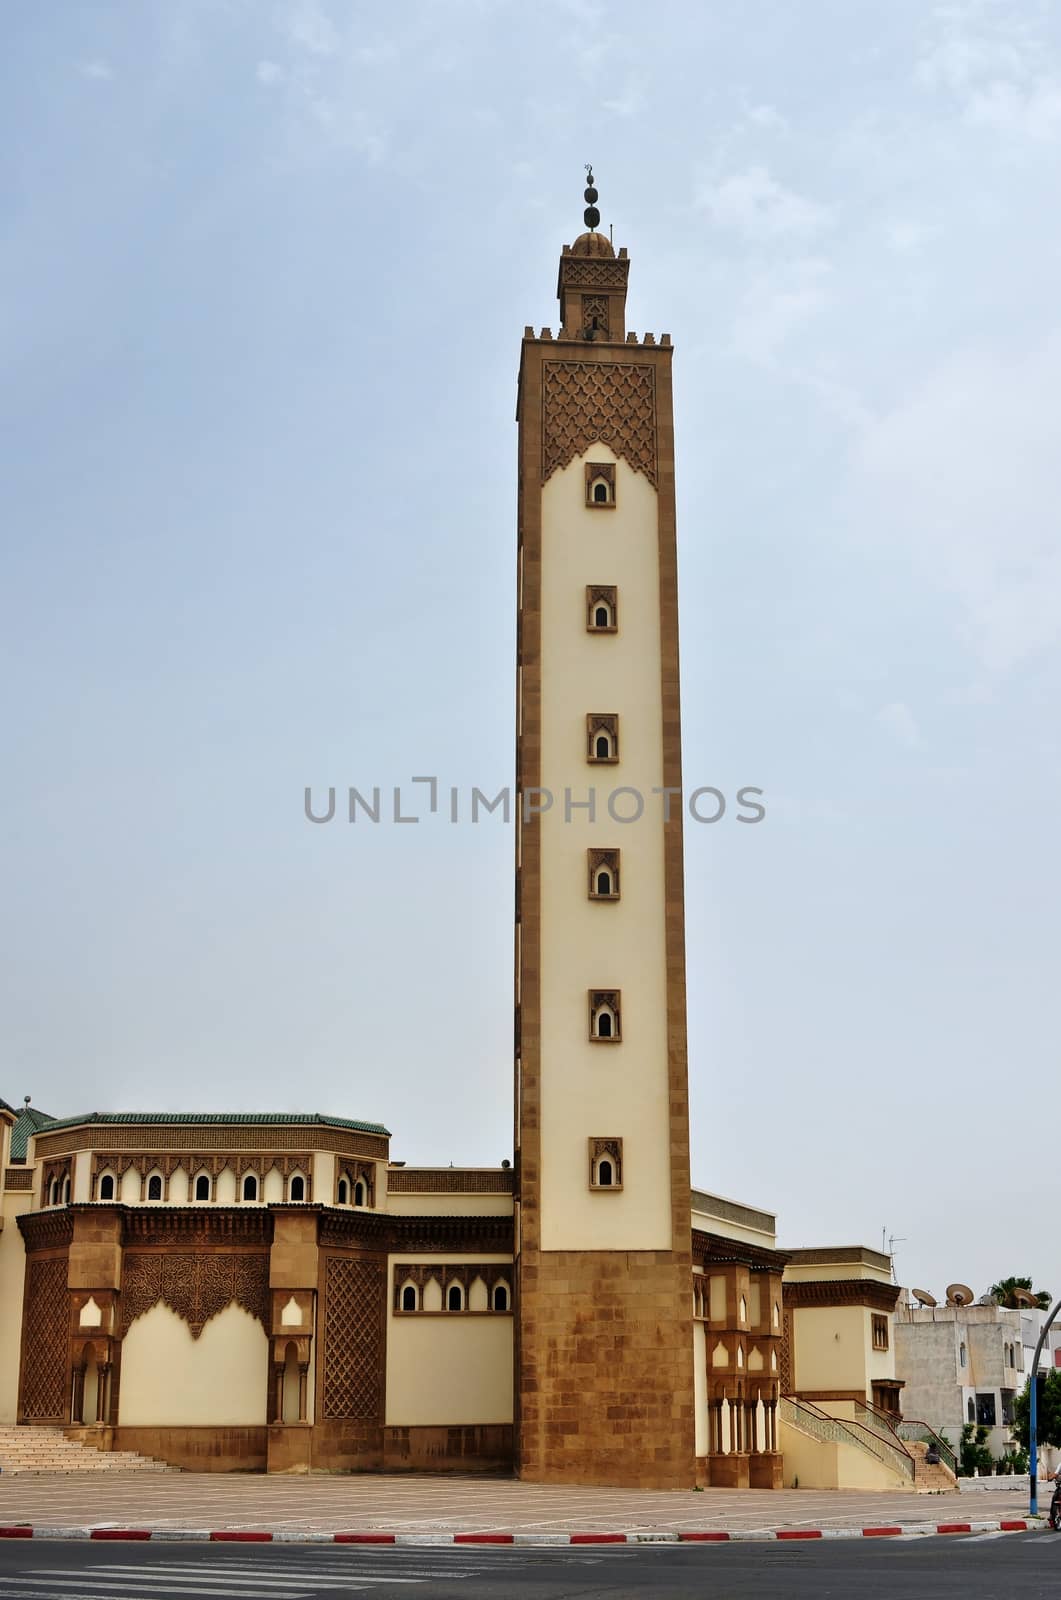 Mohammed V Mosque by tony4urban